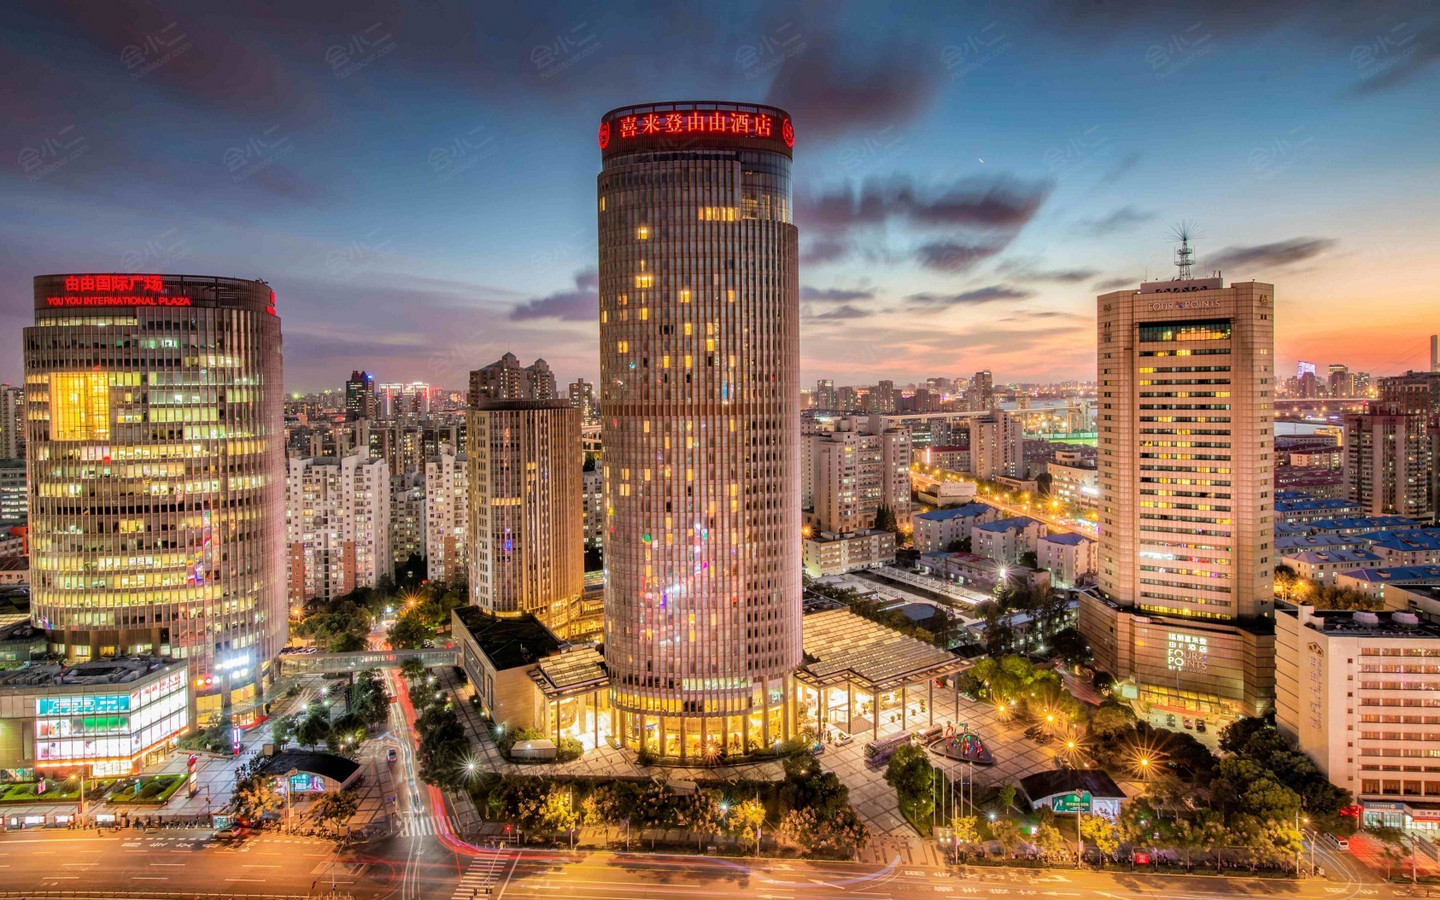 上海浦东喜来登由由大酒店及公寓  浦东新区  ·  浦东市区   最大